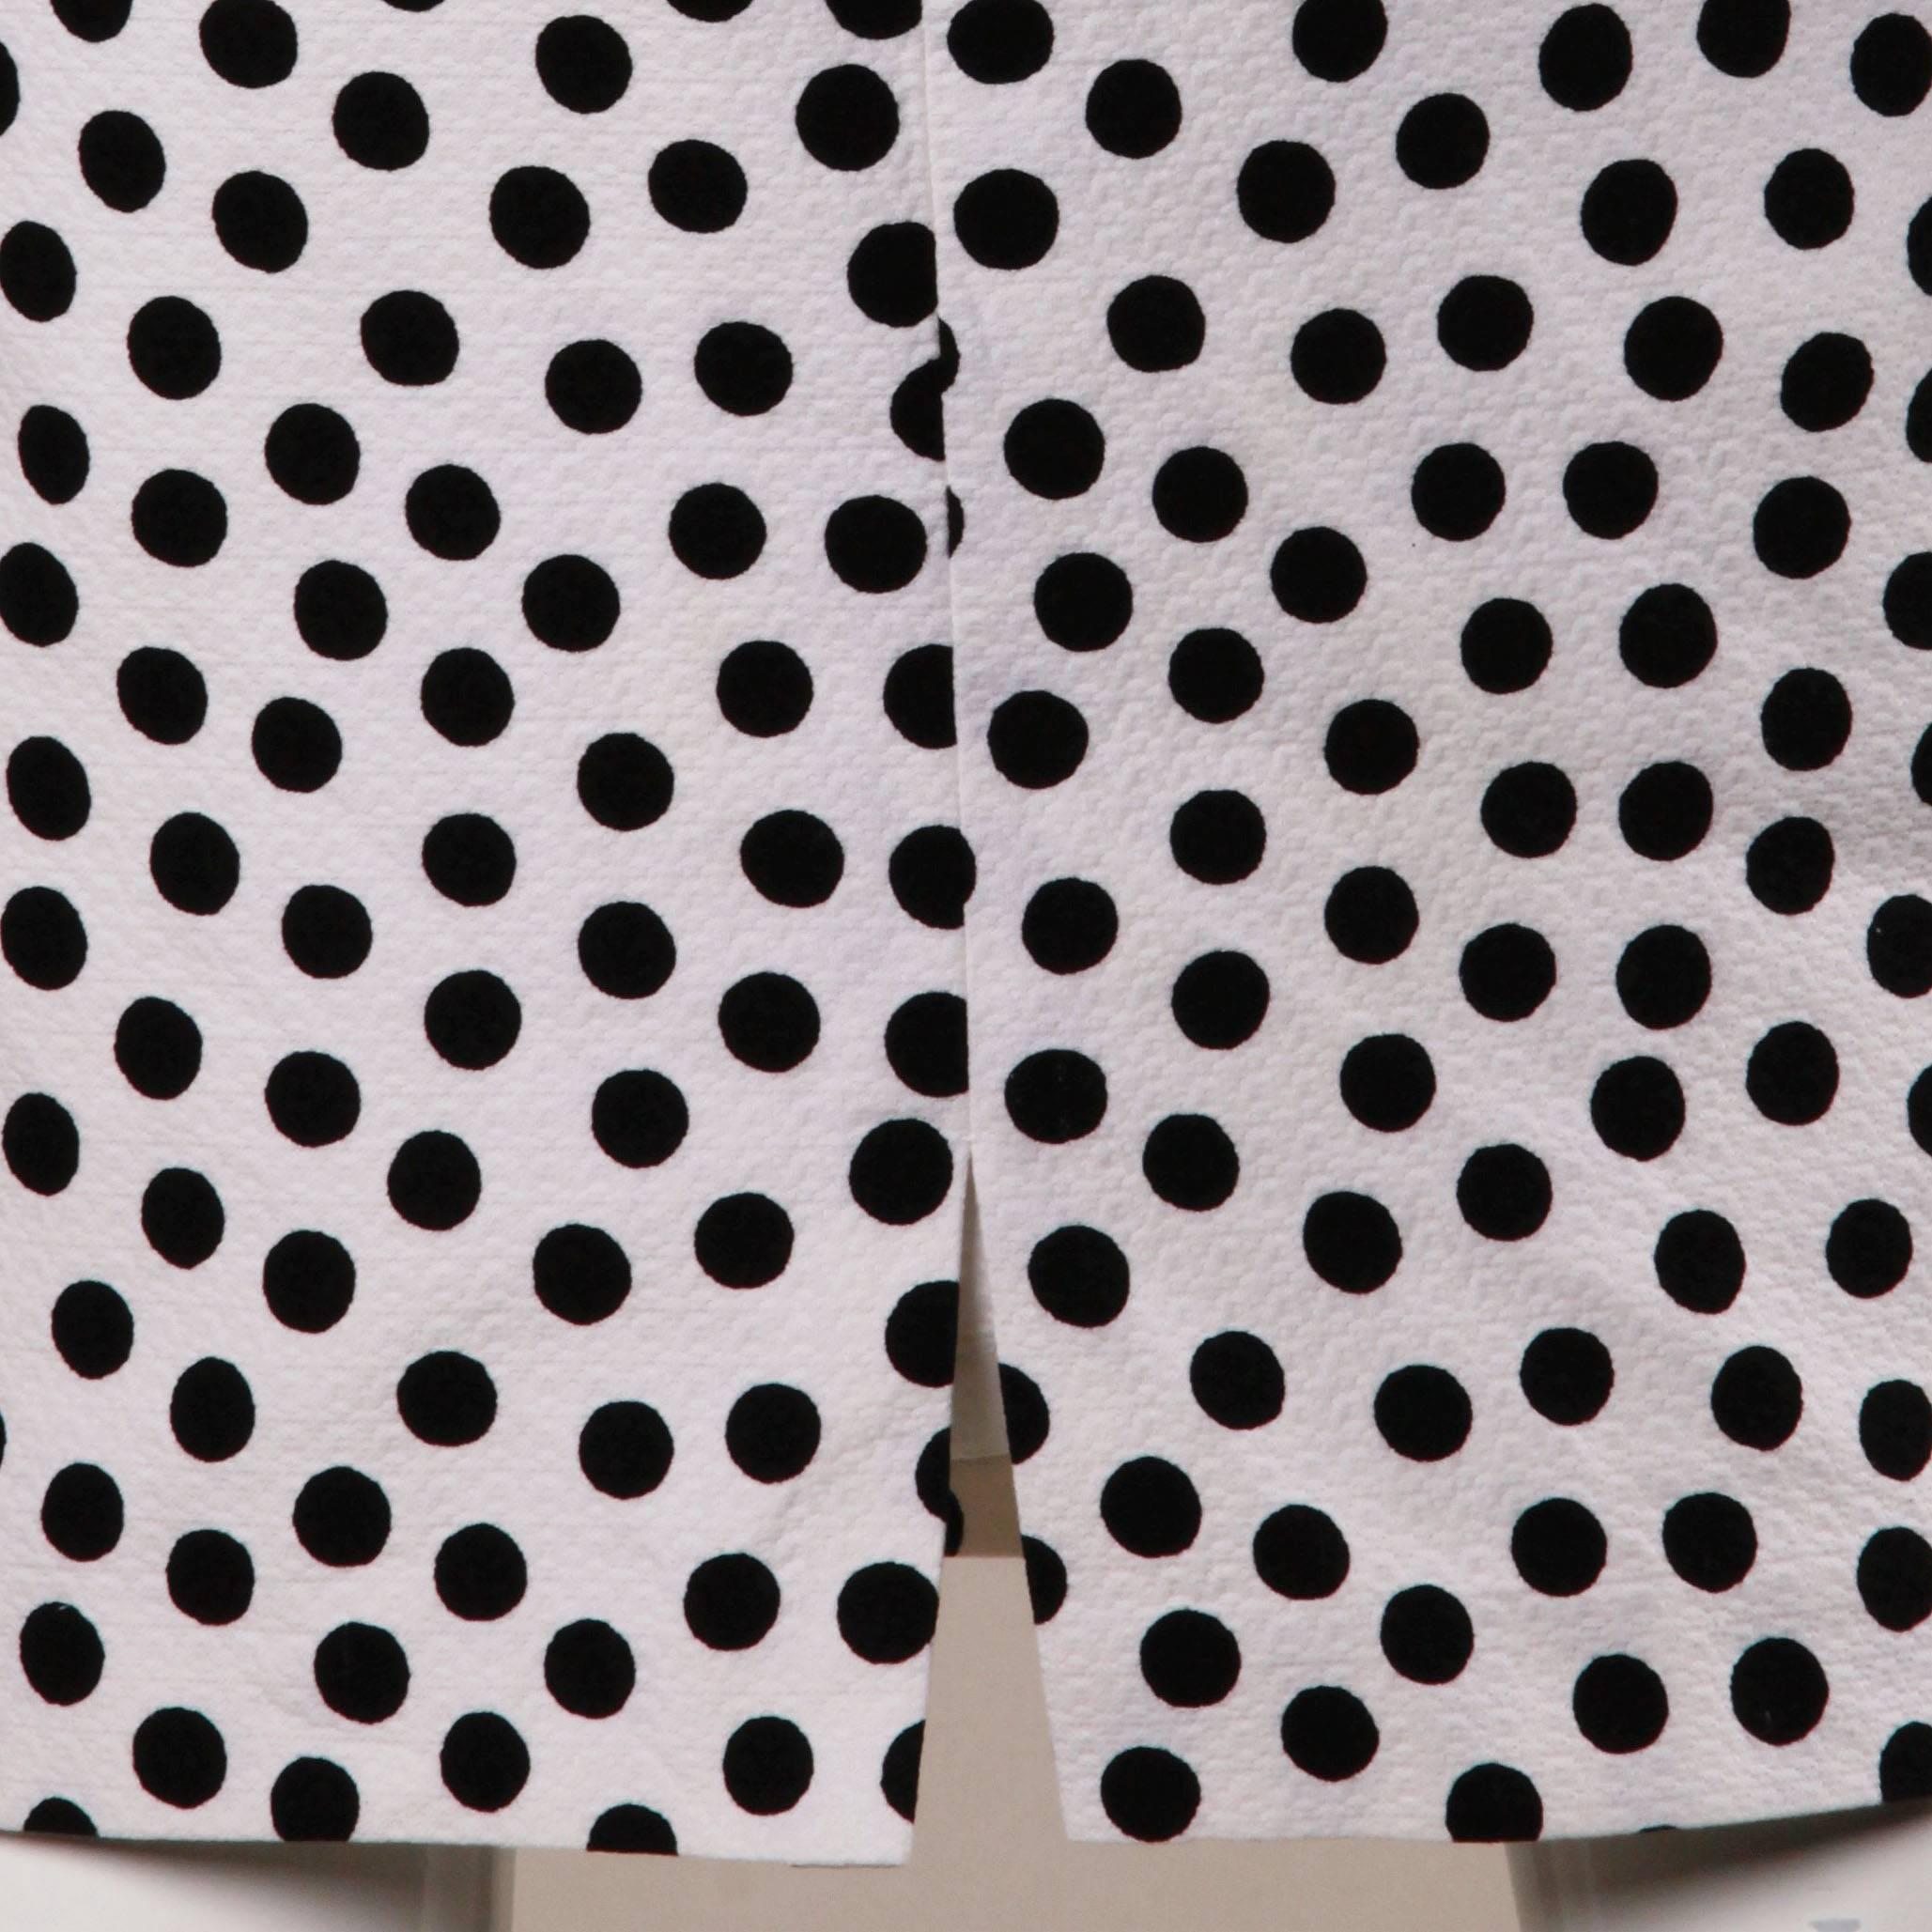 Women's YSL Yves Saint Laurent Rive Gauche Vintage Black + White Polka Dot Skirt